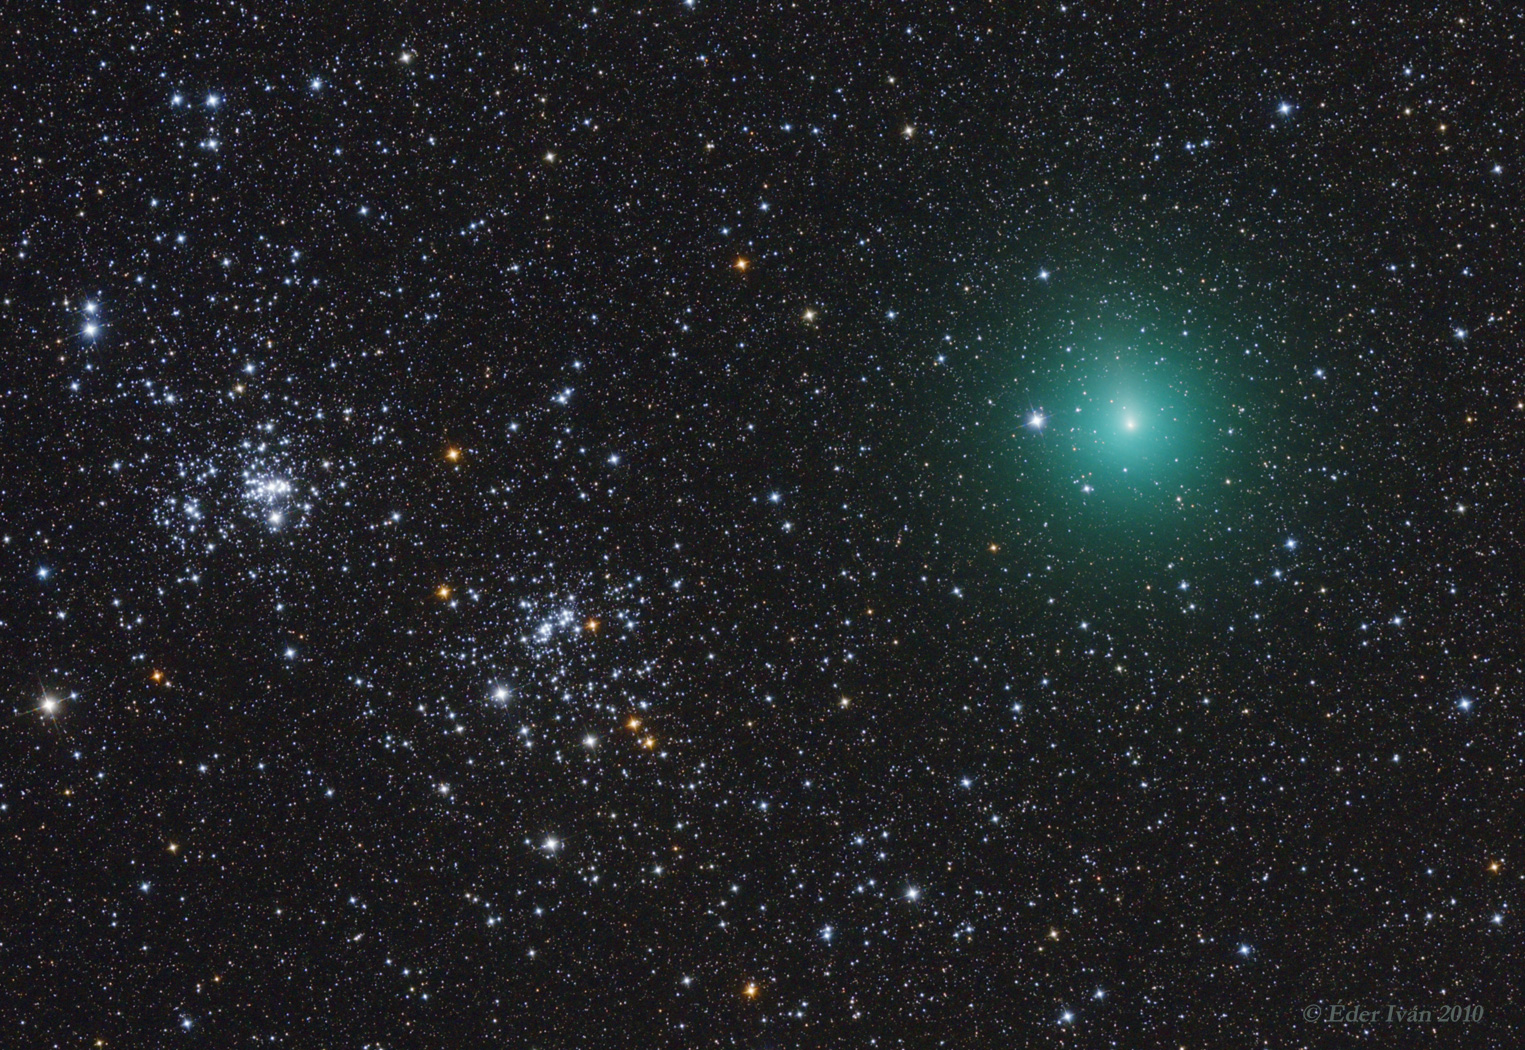 Comet 103P/Hartley meets Double Cluster